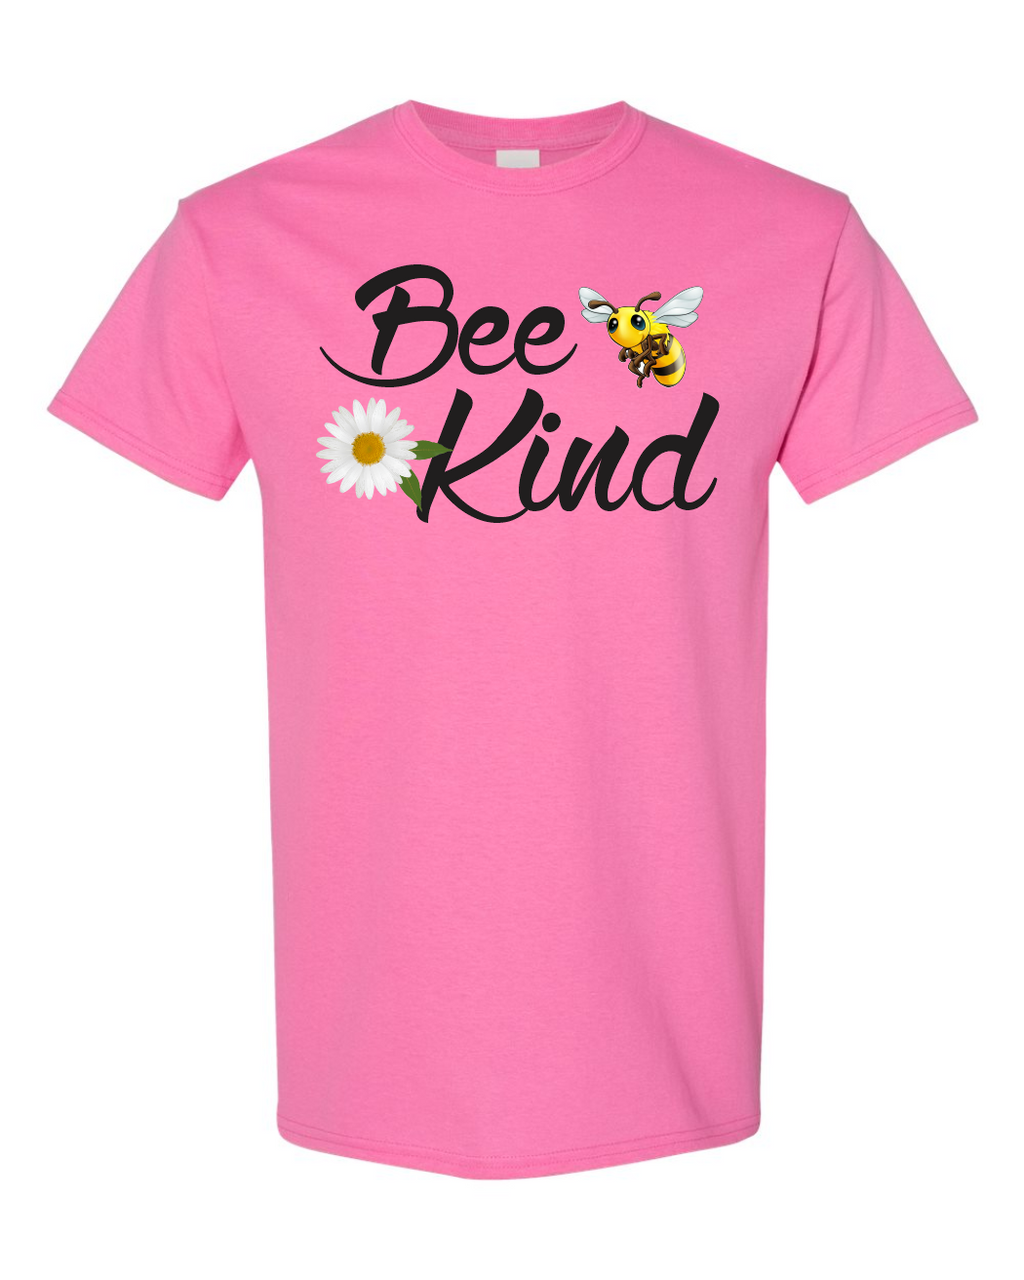 Be Kind Shirt - Bee Kind